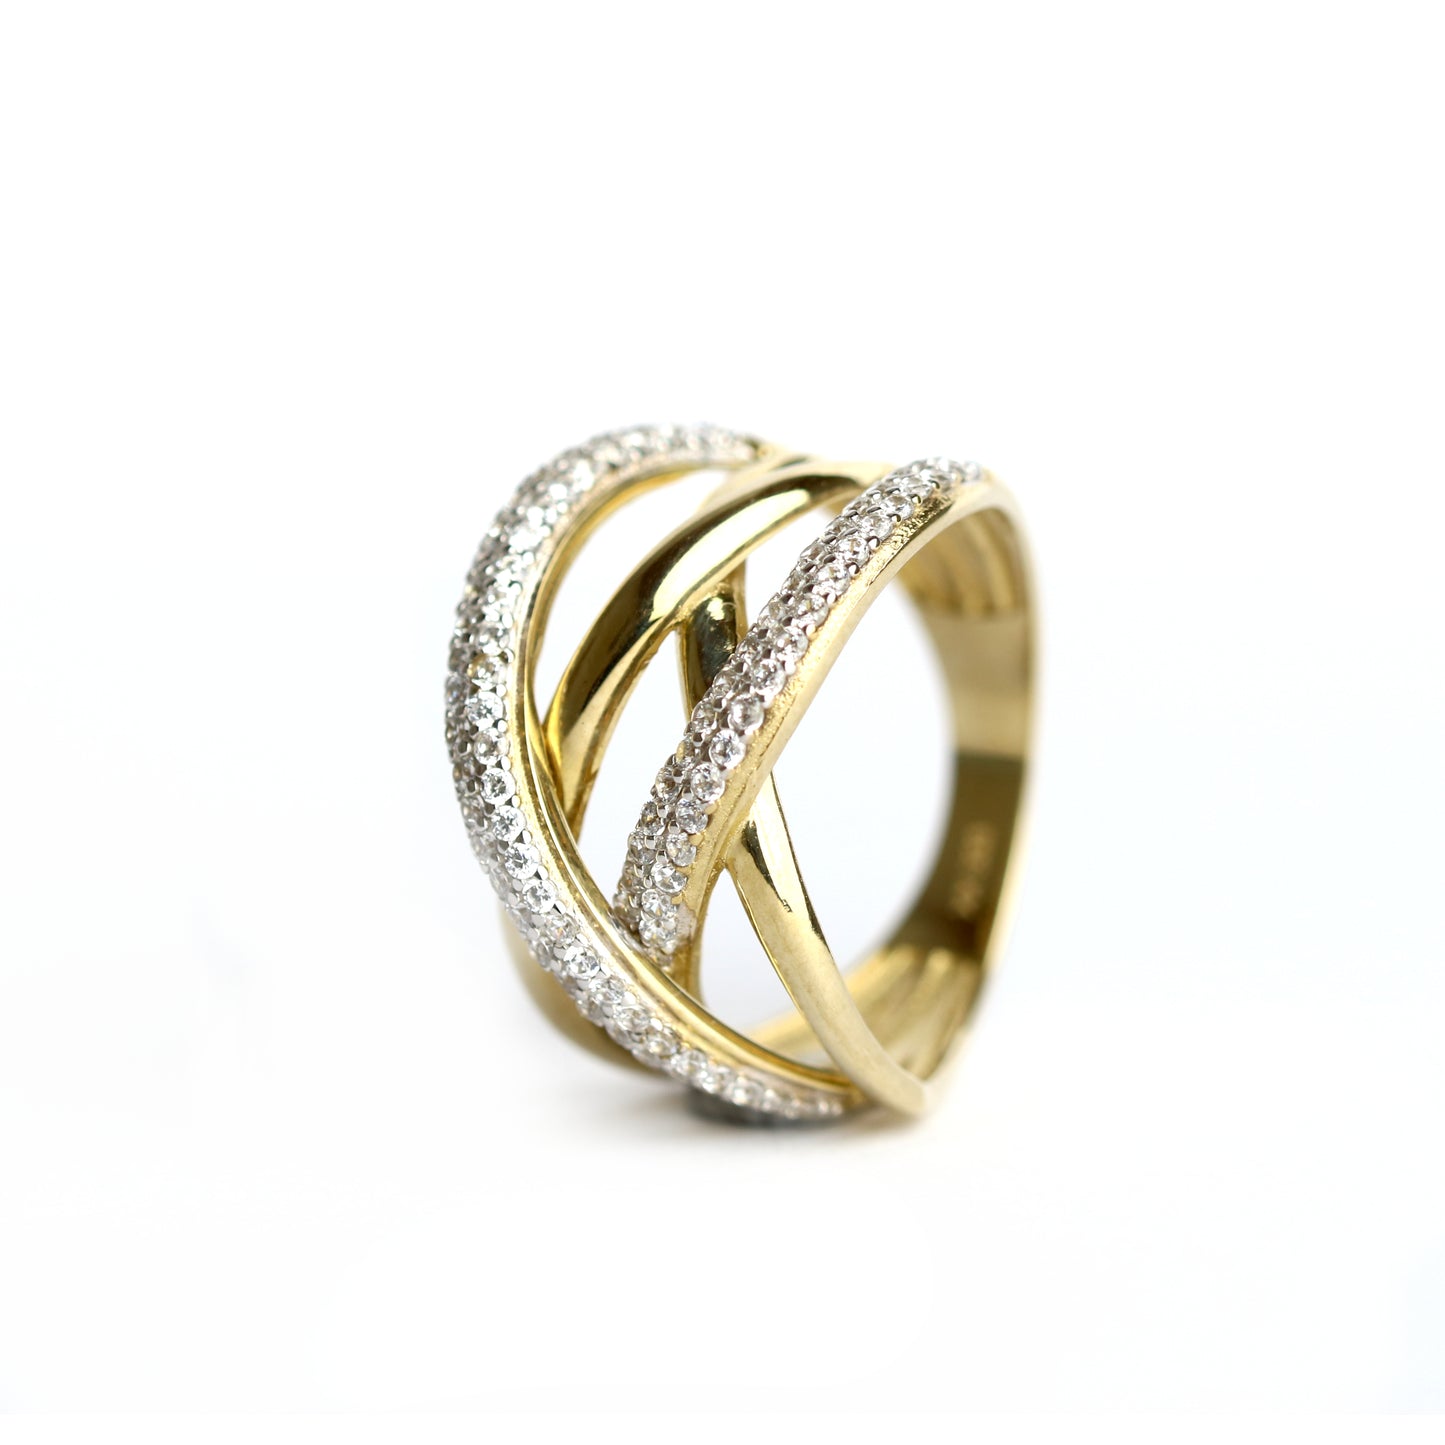 WILHELM MÜLLER - Ring in Gold mit Zirkonia